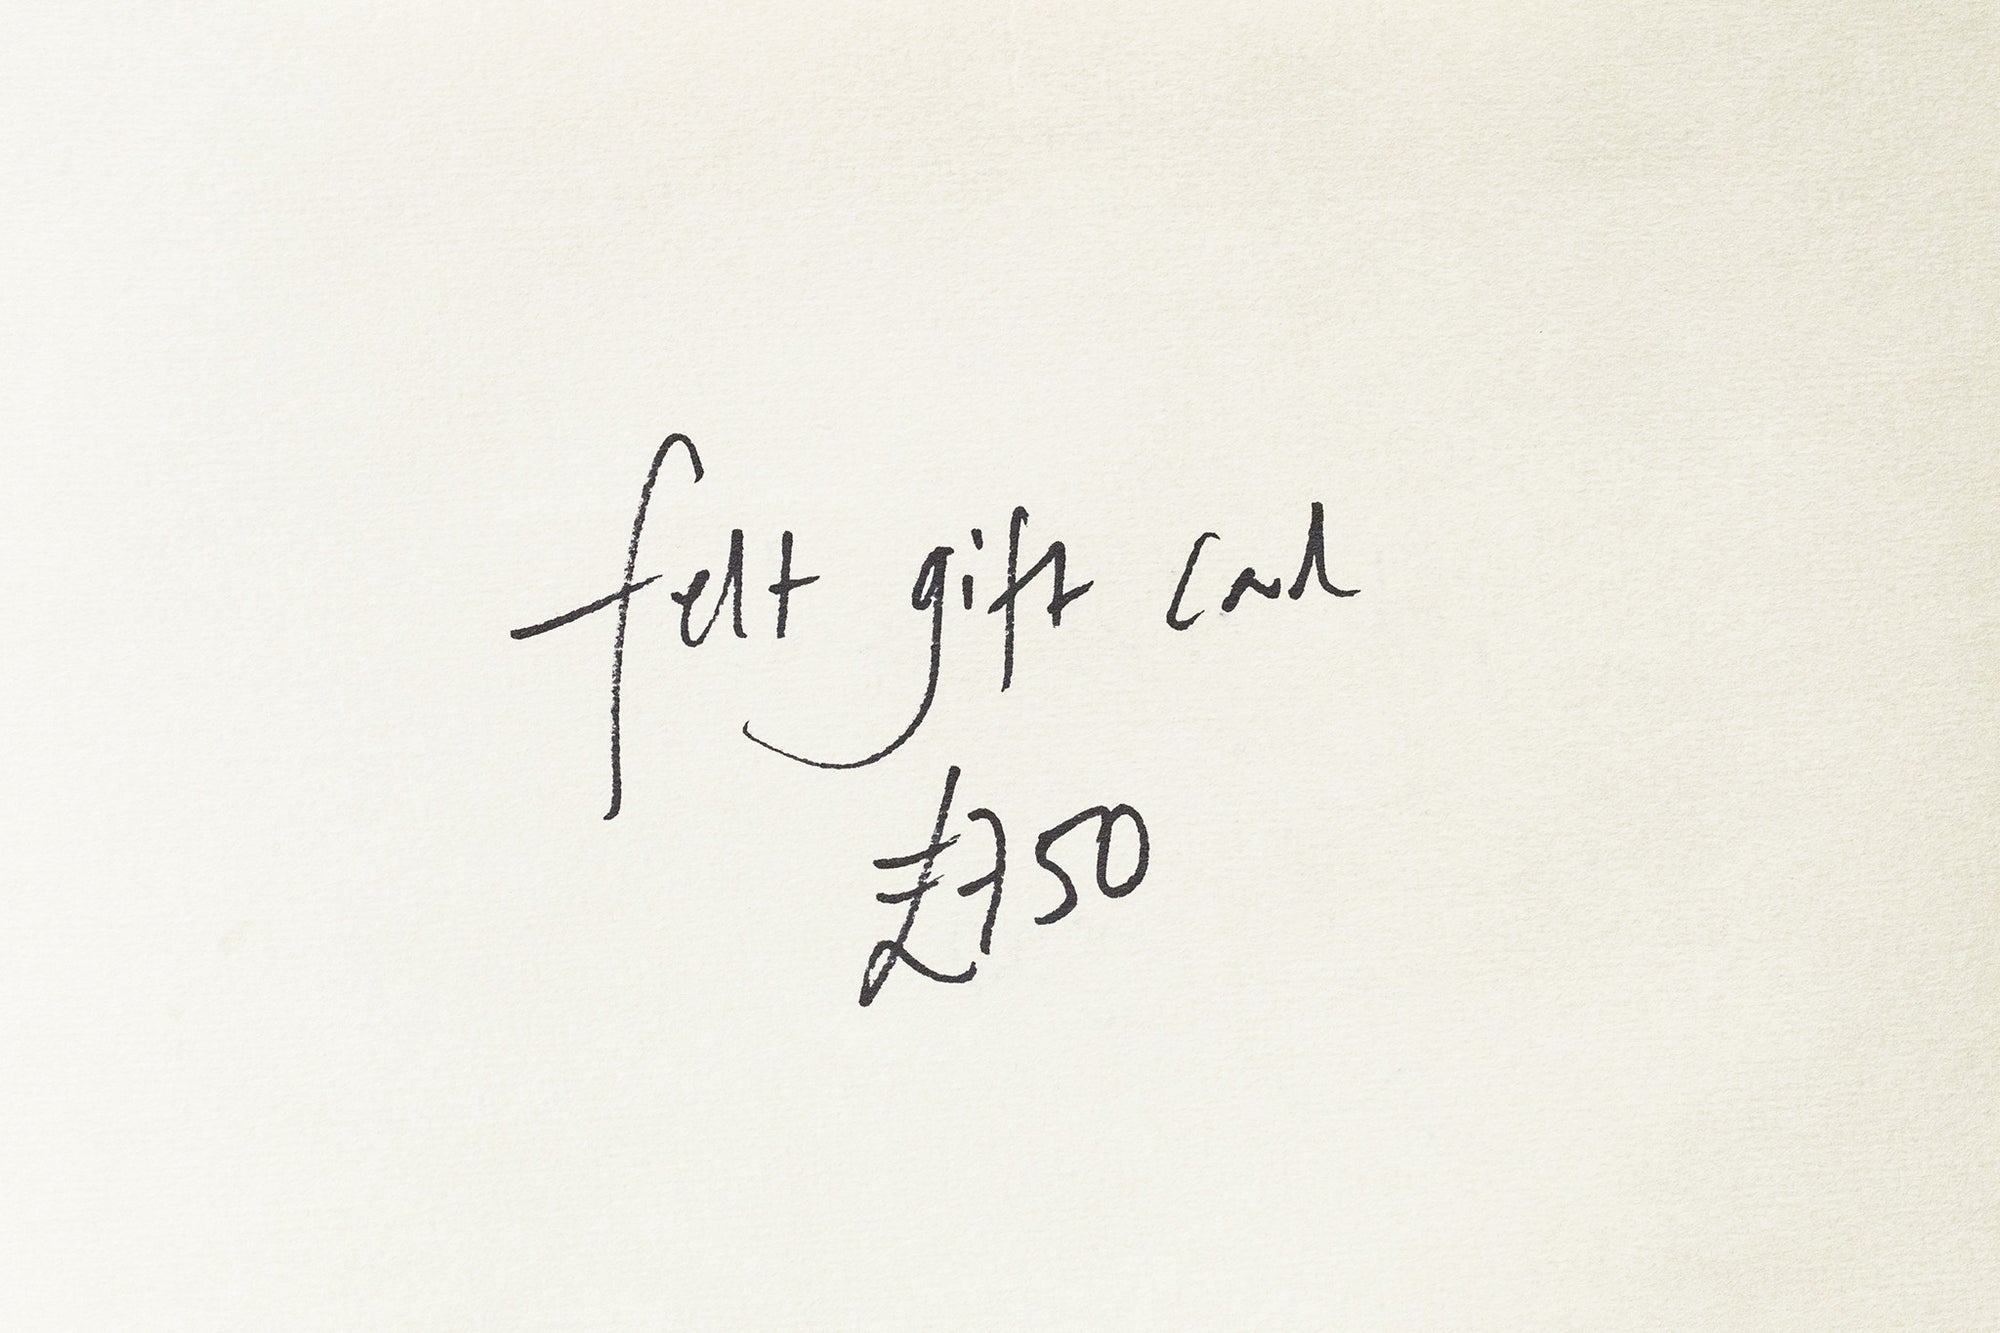 felt gift card for £750